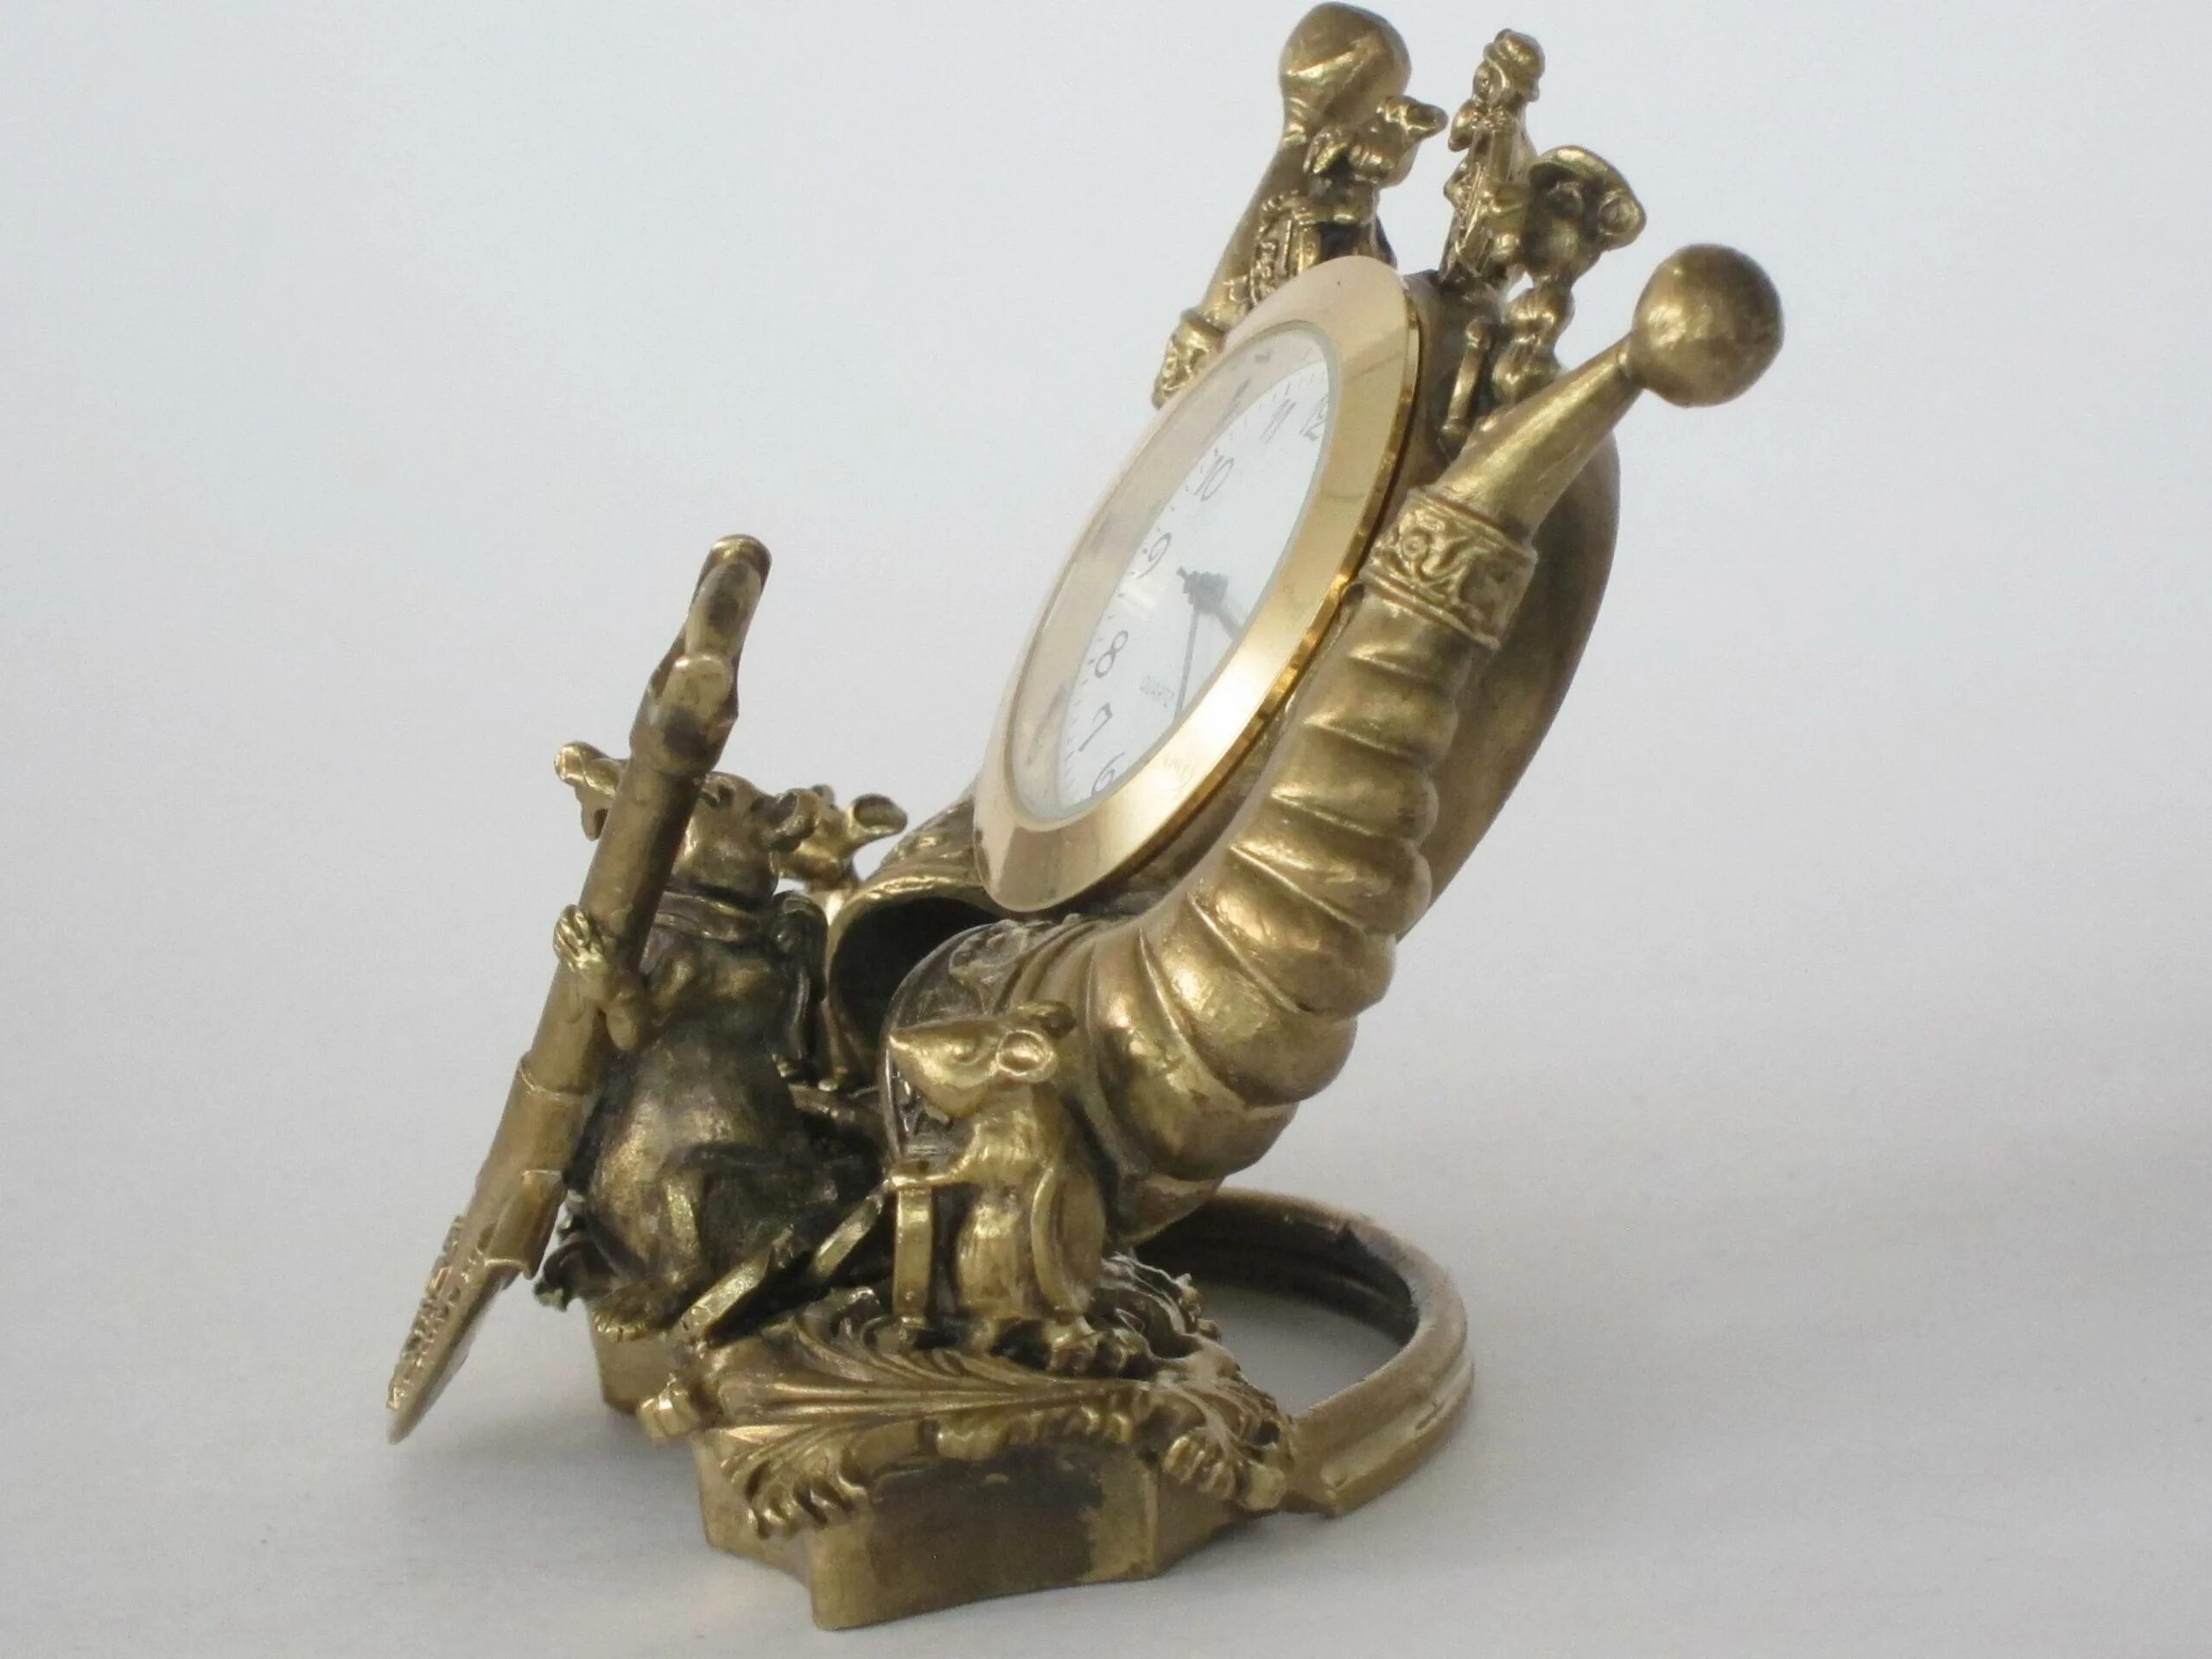 Часы Рог изобилия. Рог изобилия на бронзовой подставке. Самовар-часы из бронзы. Лампа бронза Рог изобилия. Часы самовар